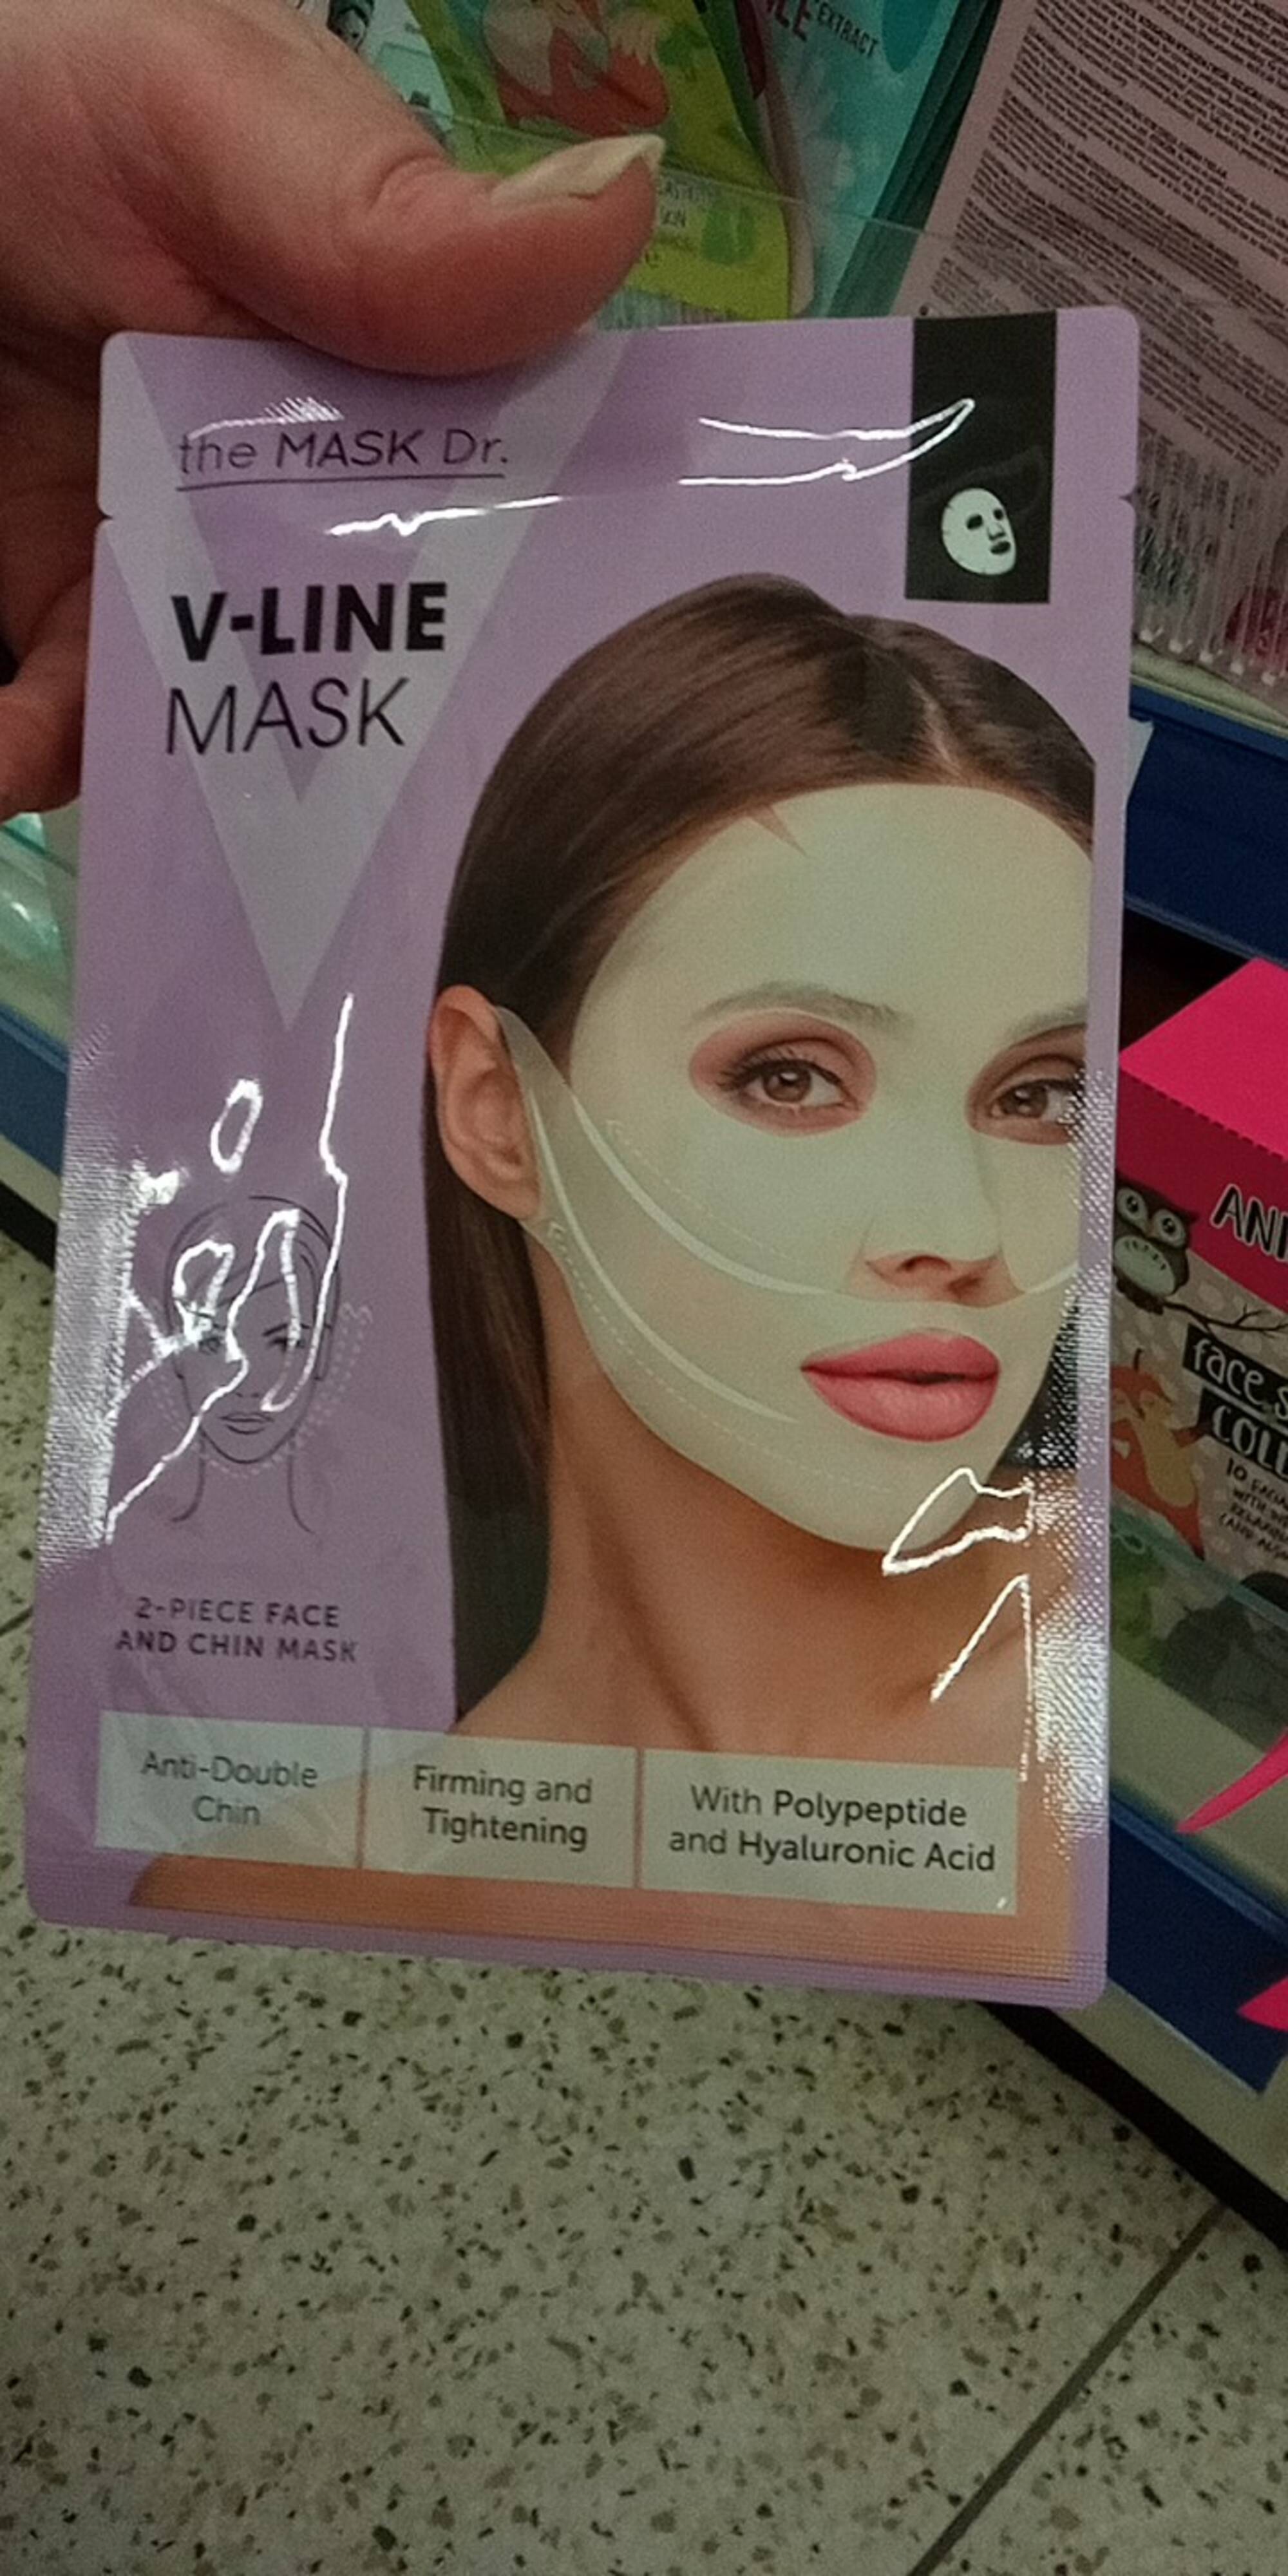 THE MASK DR. - Masques de beauté anti-double Chin